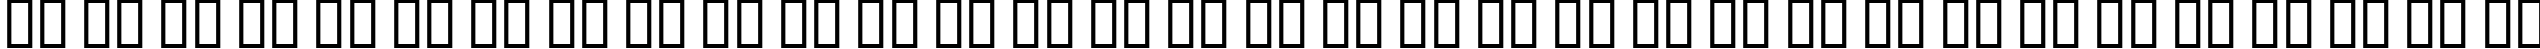 Пример написания русского алфавита шрифтом Californian FB Italic